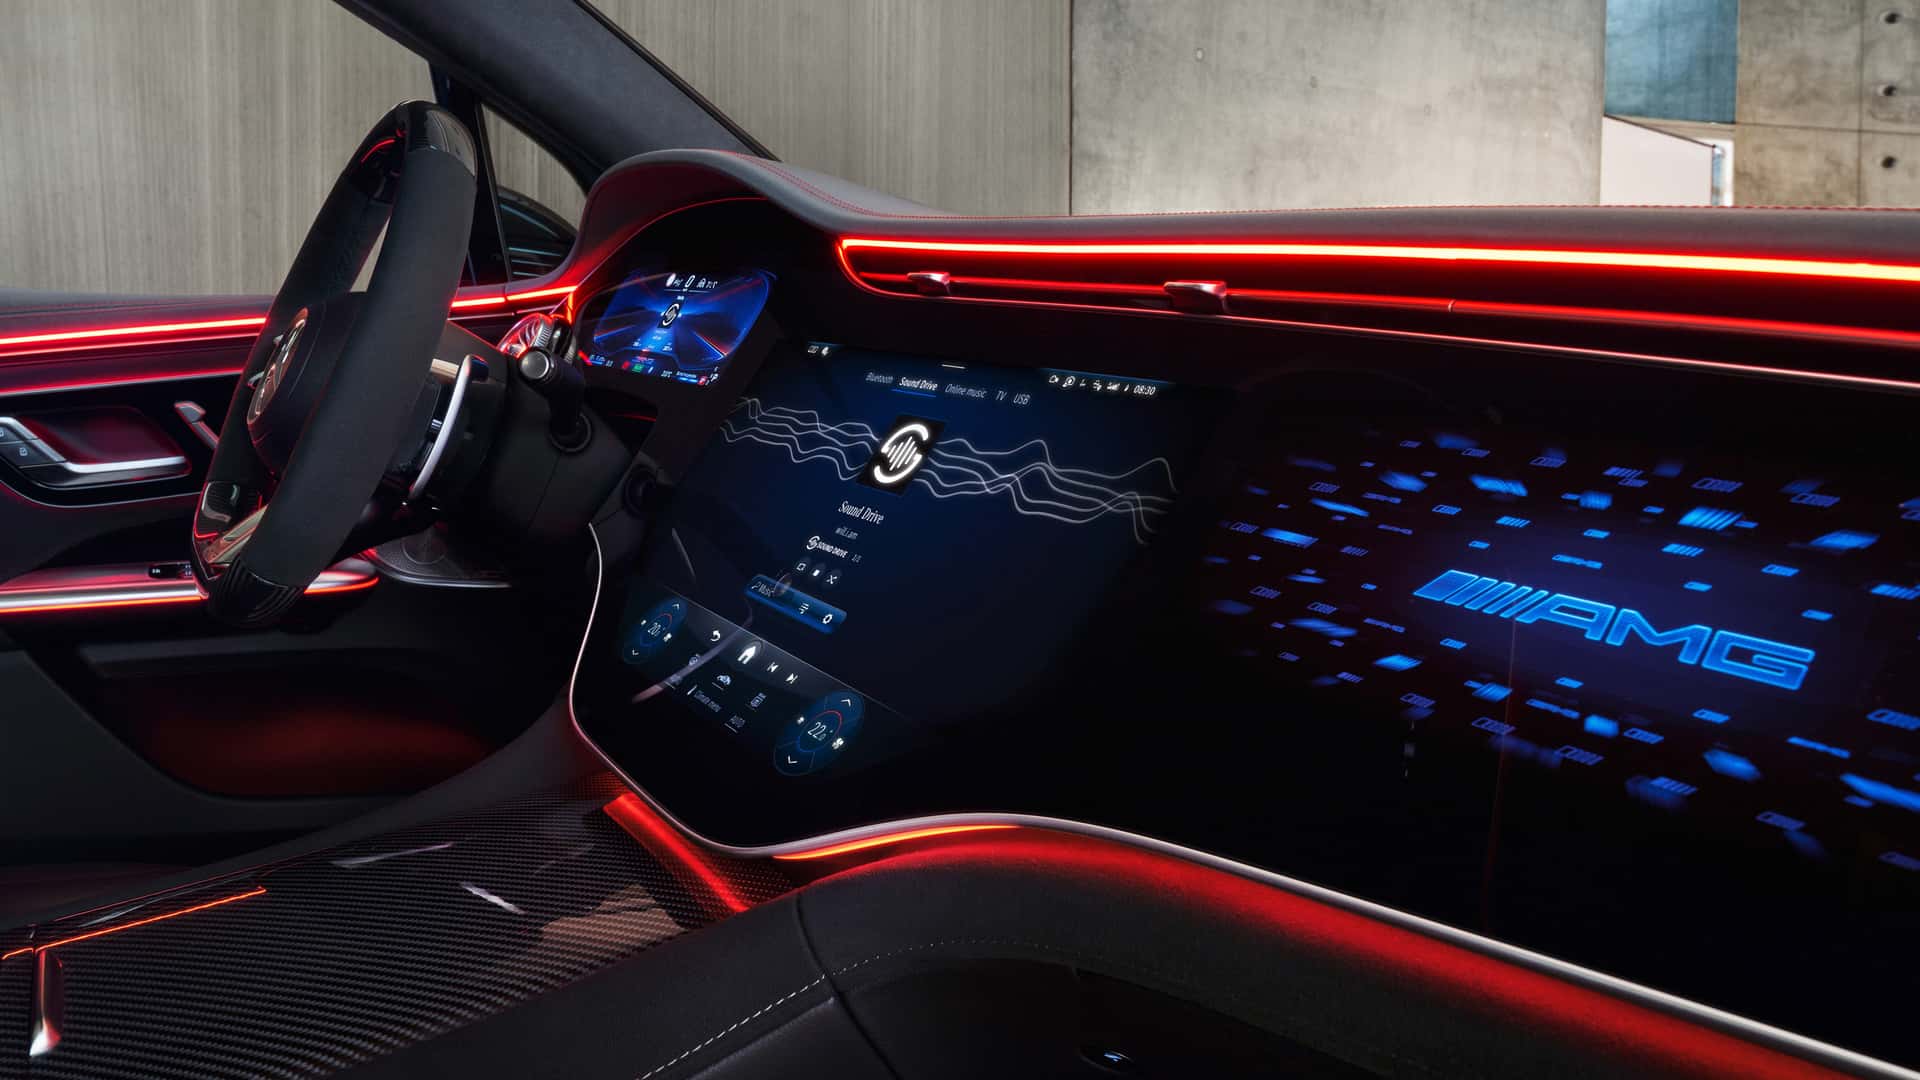 مرسيدس تكشف عن الجيل الجديد من نظام التشغيل لسياراتها بتقنيات مبتكرة جديدة 12